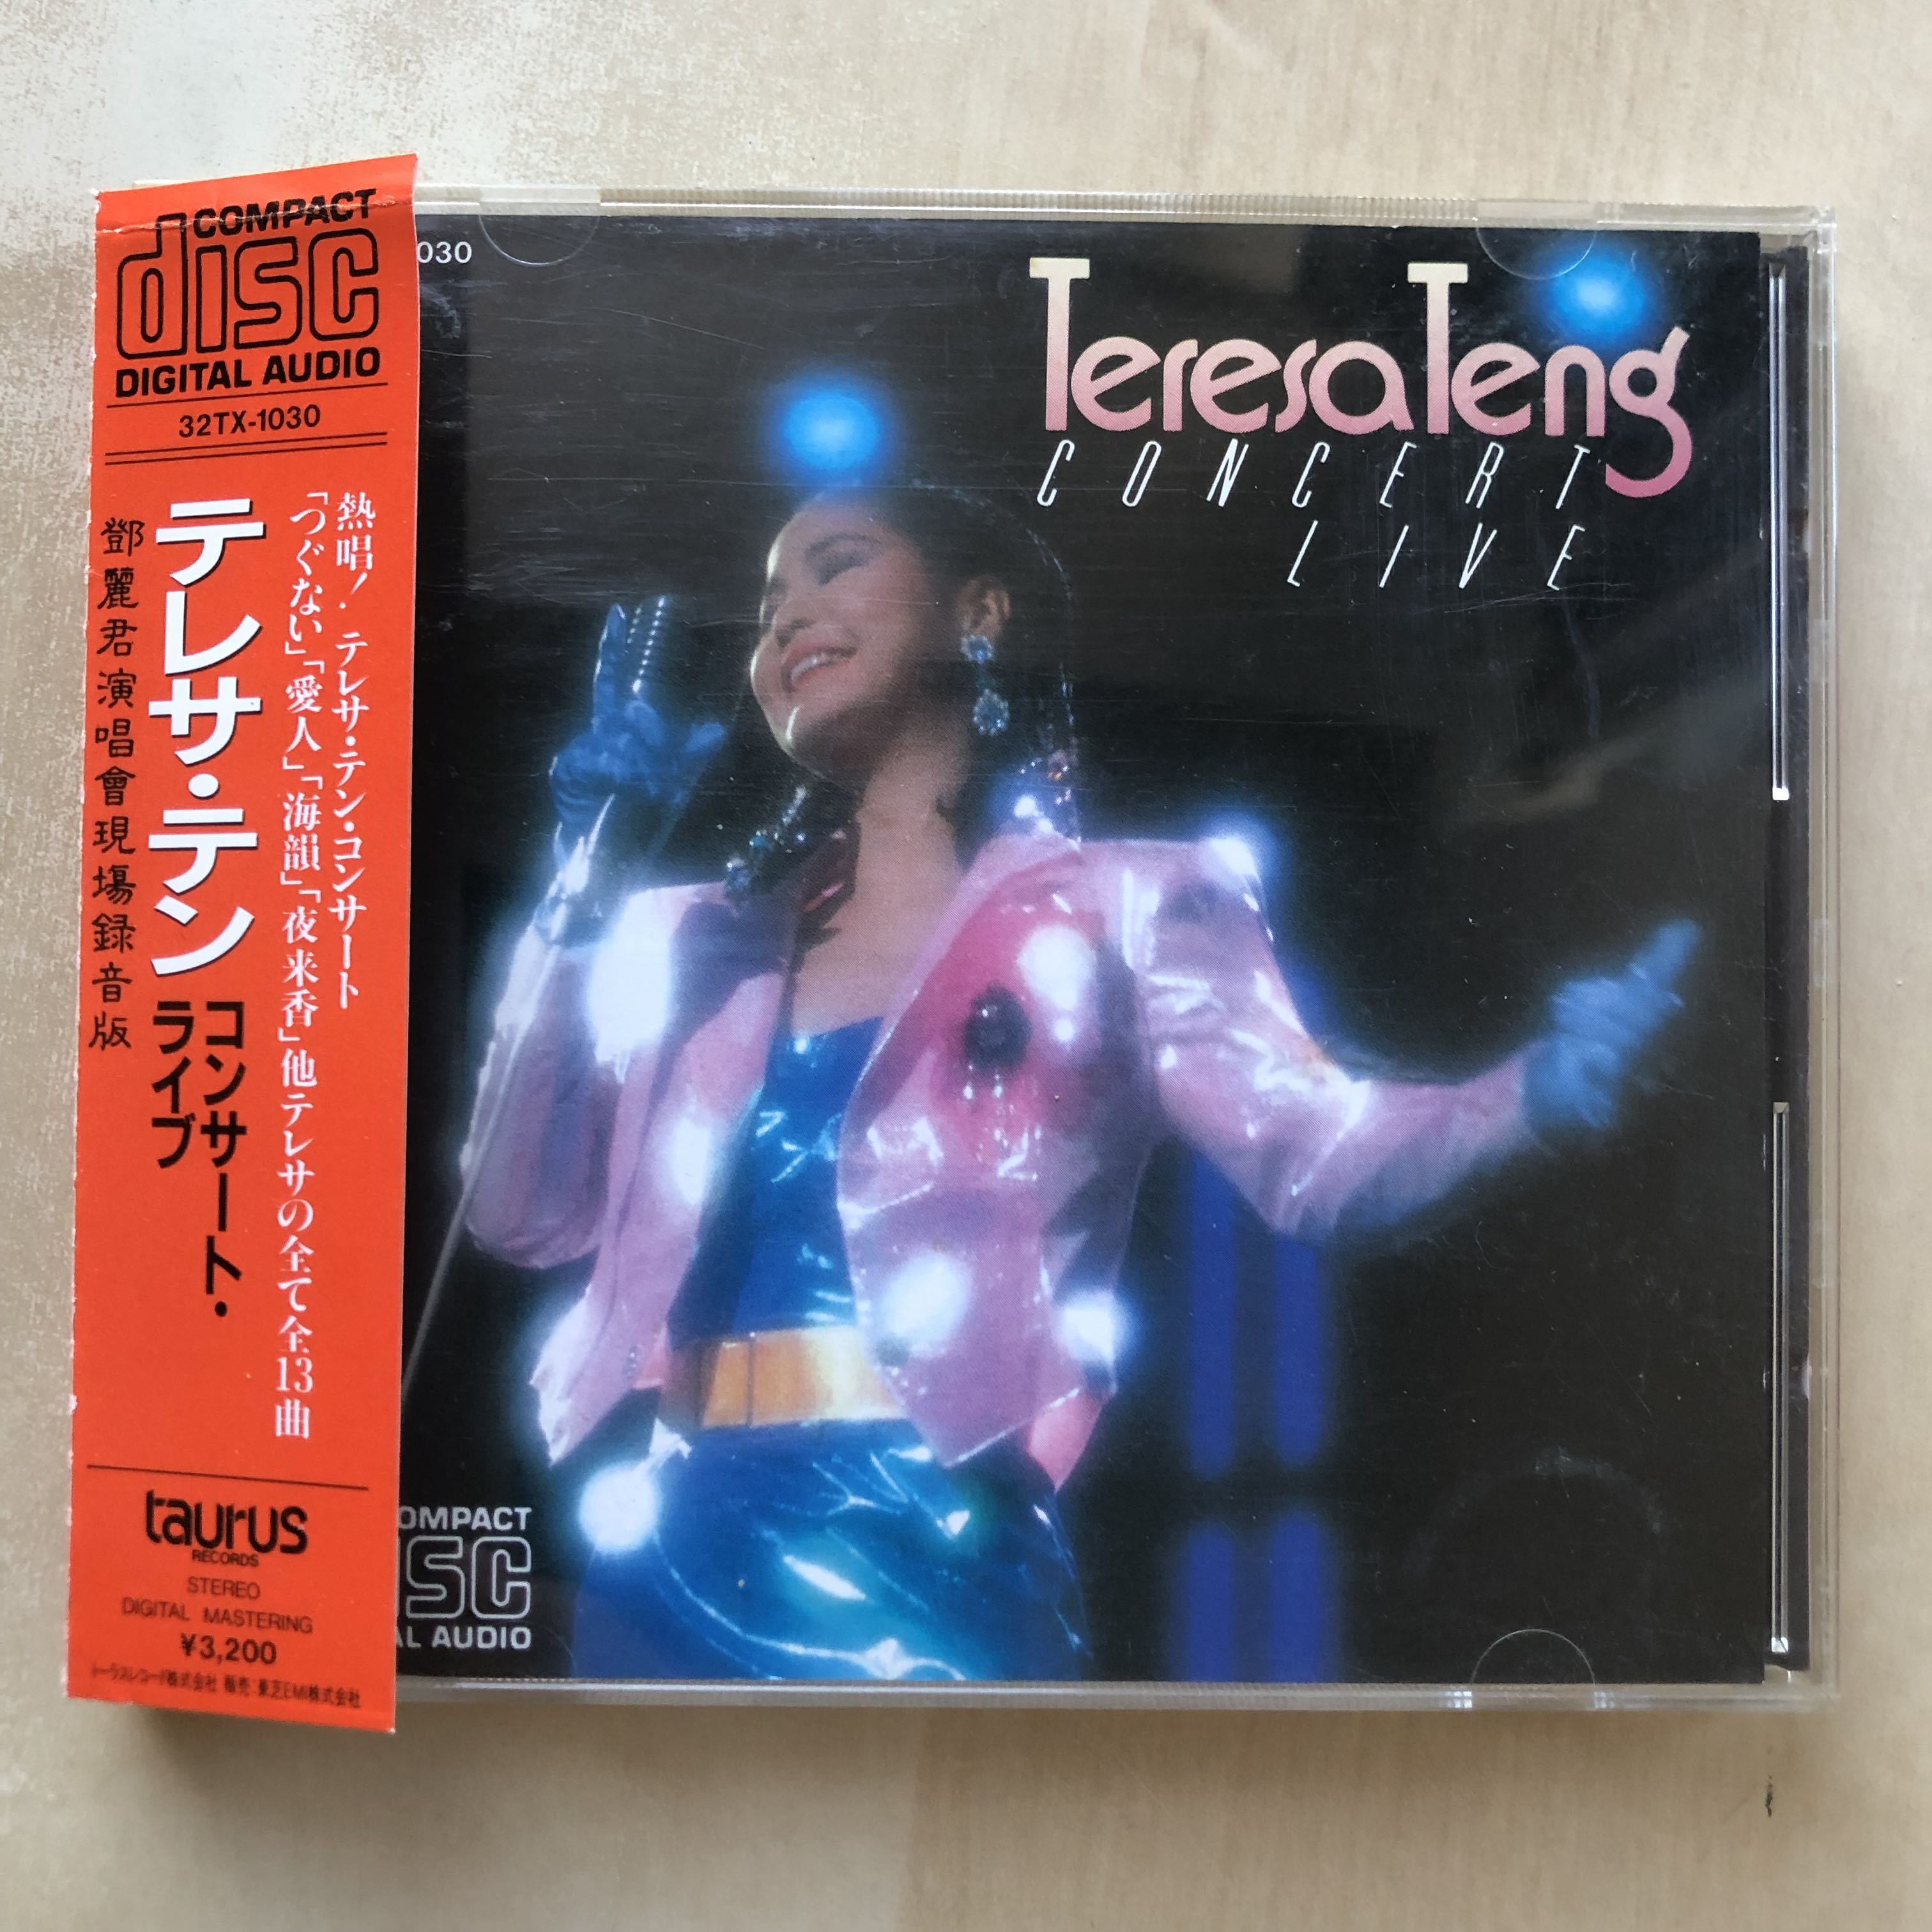 CD丨鄧麗君演唱會/ Teresa Teng Concert Live / テレサ・テン